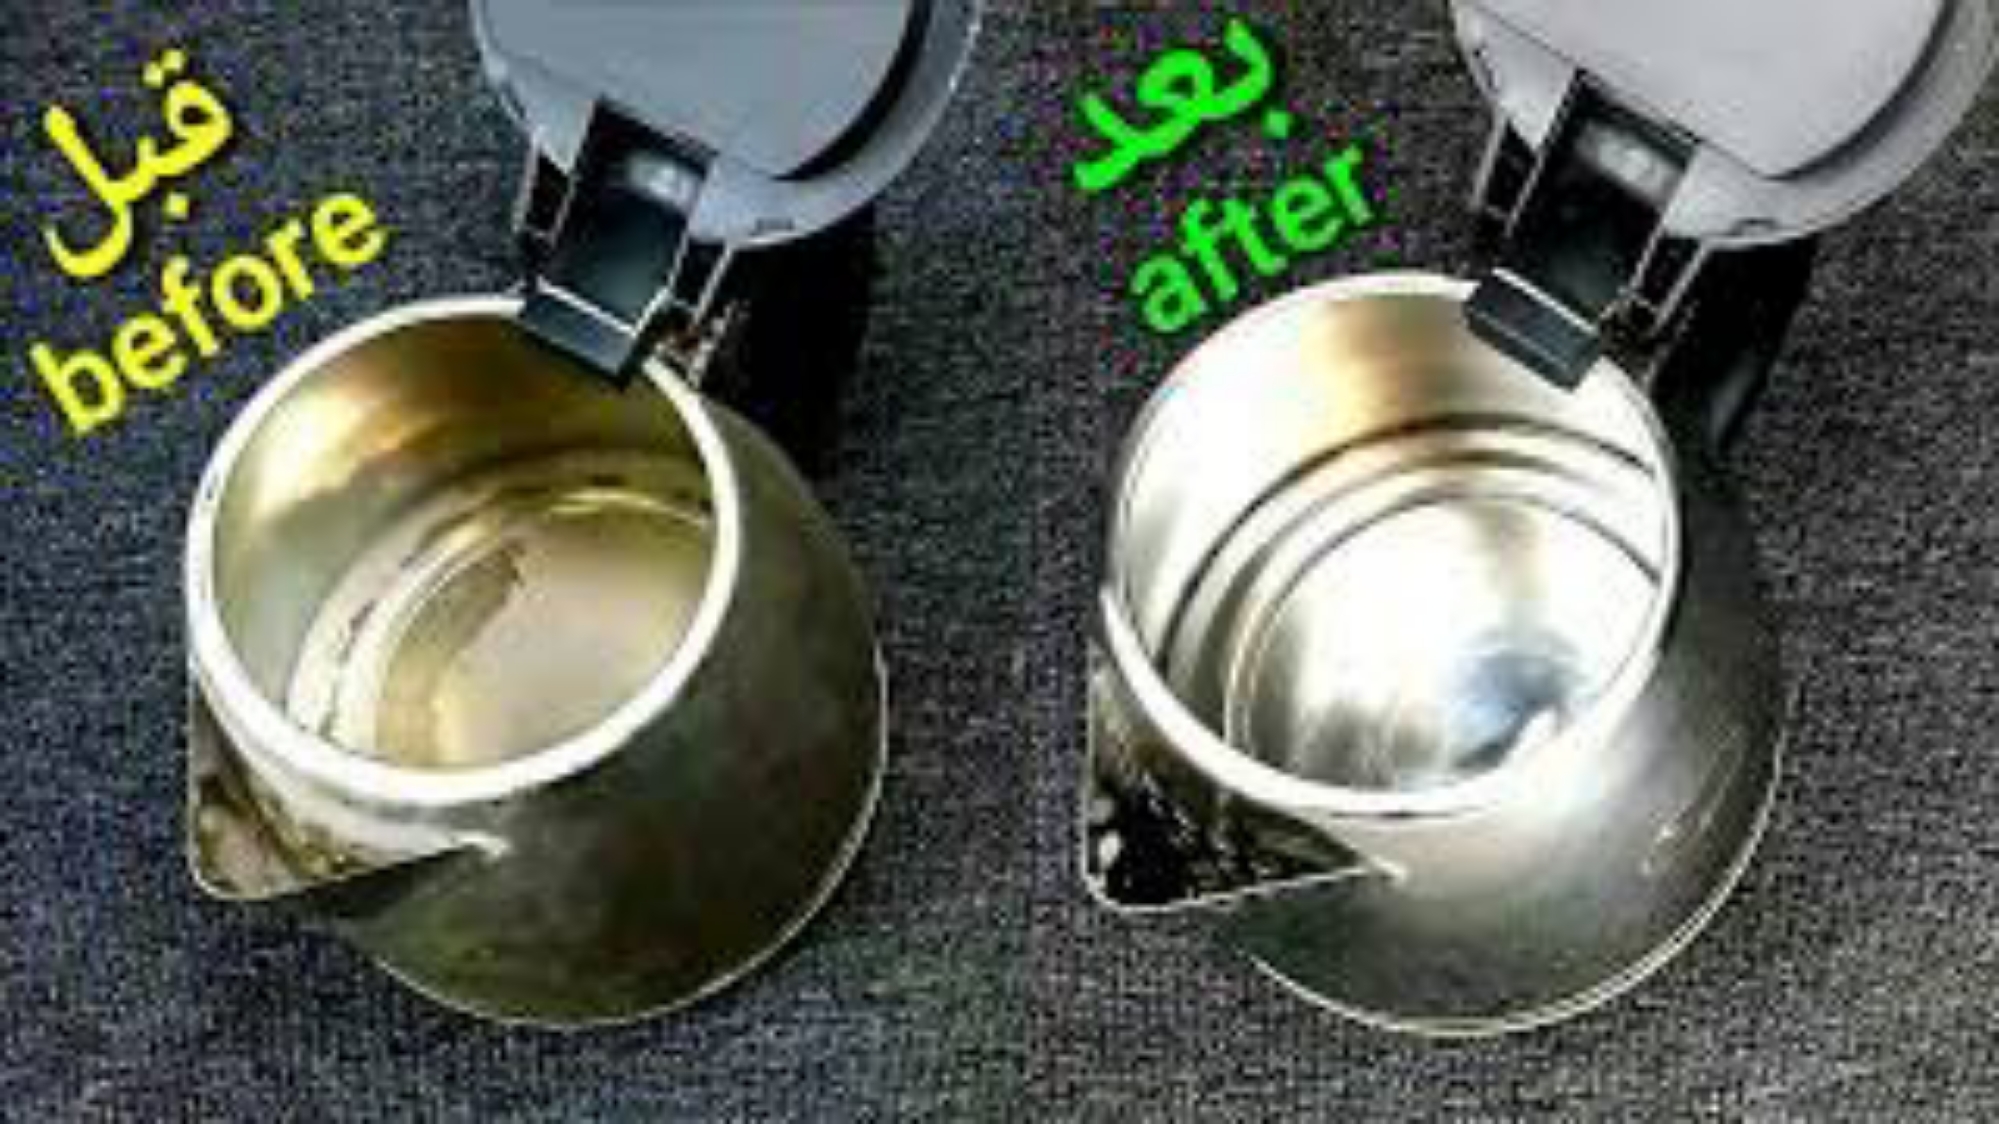 صحة  “هيبقي جديد لنج” طريقة تنظيف الغلاية الكهربائية بمكونات من منزلك روعة التوفير